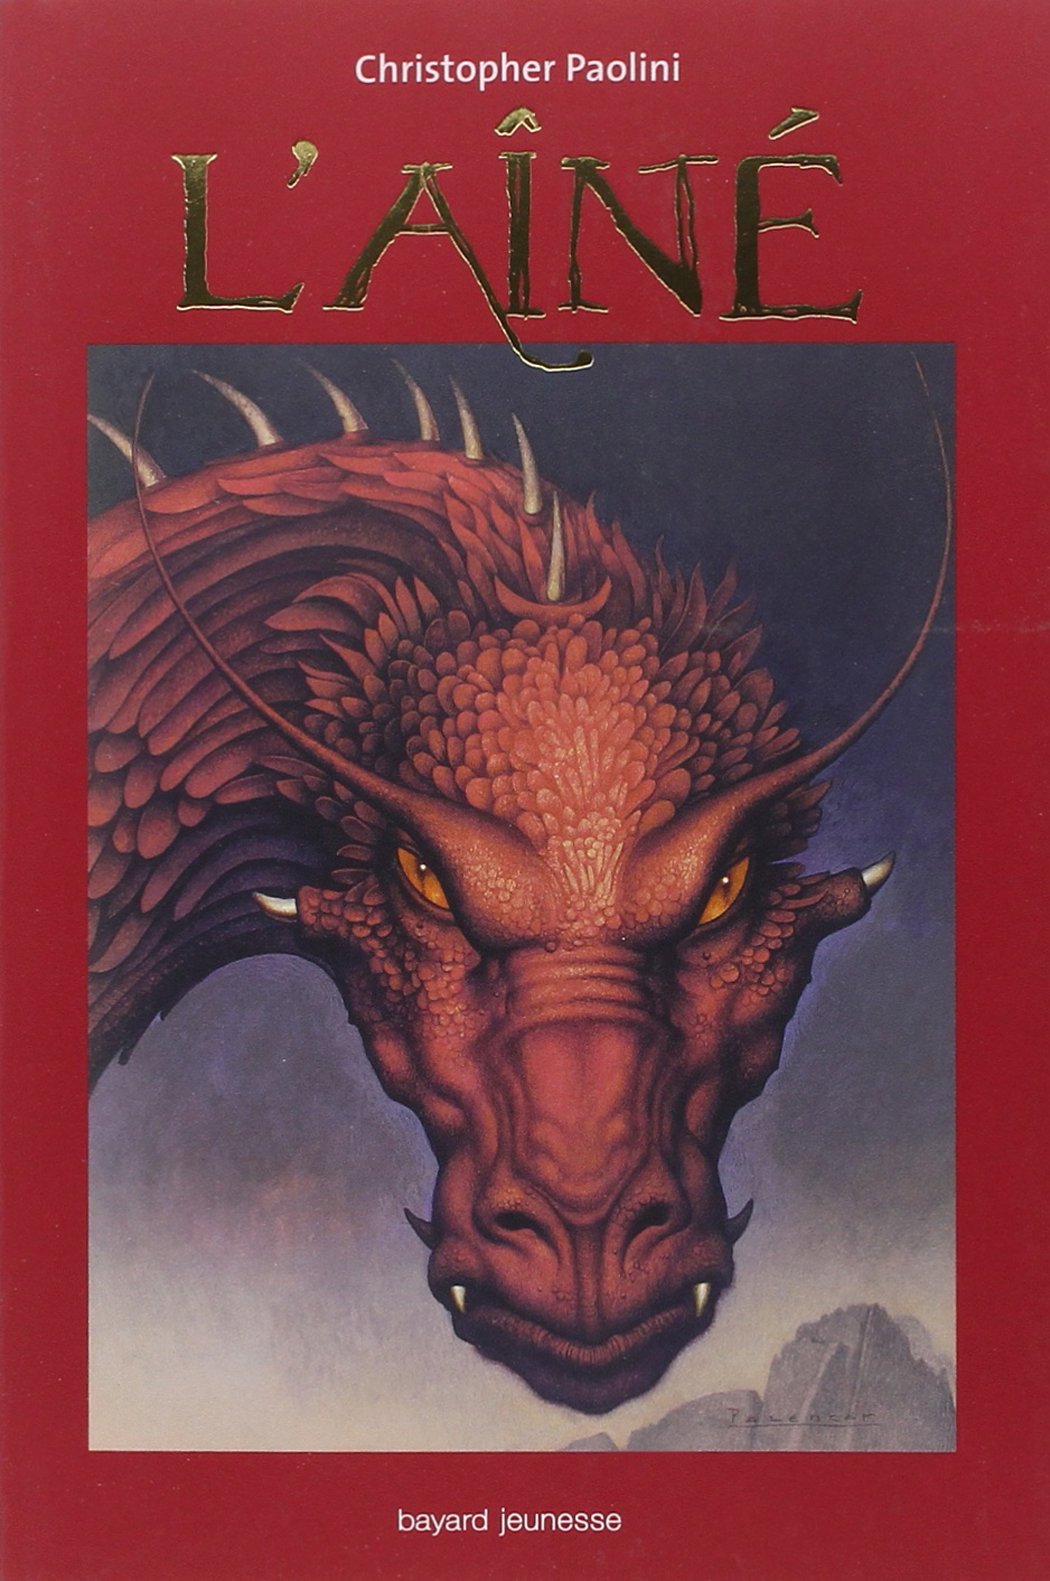 Livre ISBN 274701455X Eragon # 2 : L'aîné (Christopher Paolini)